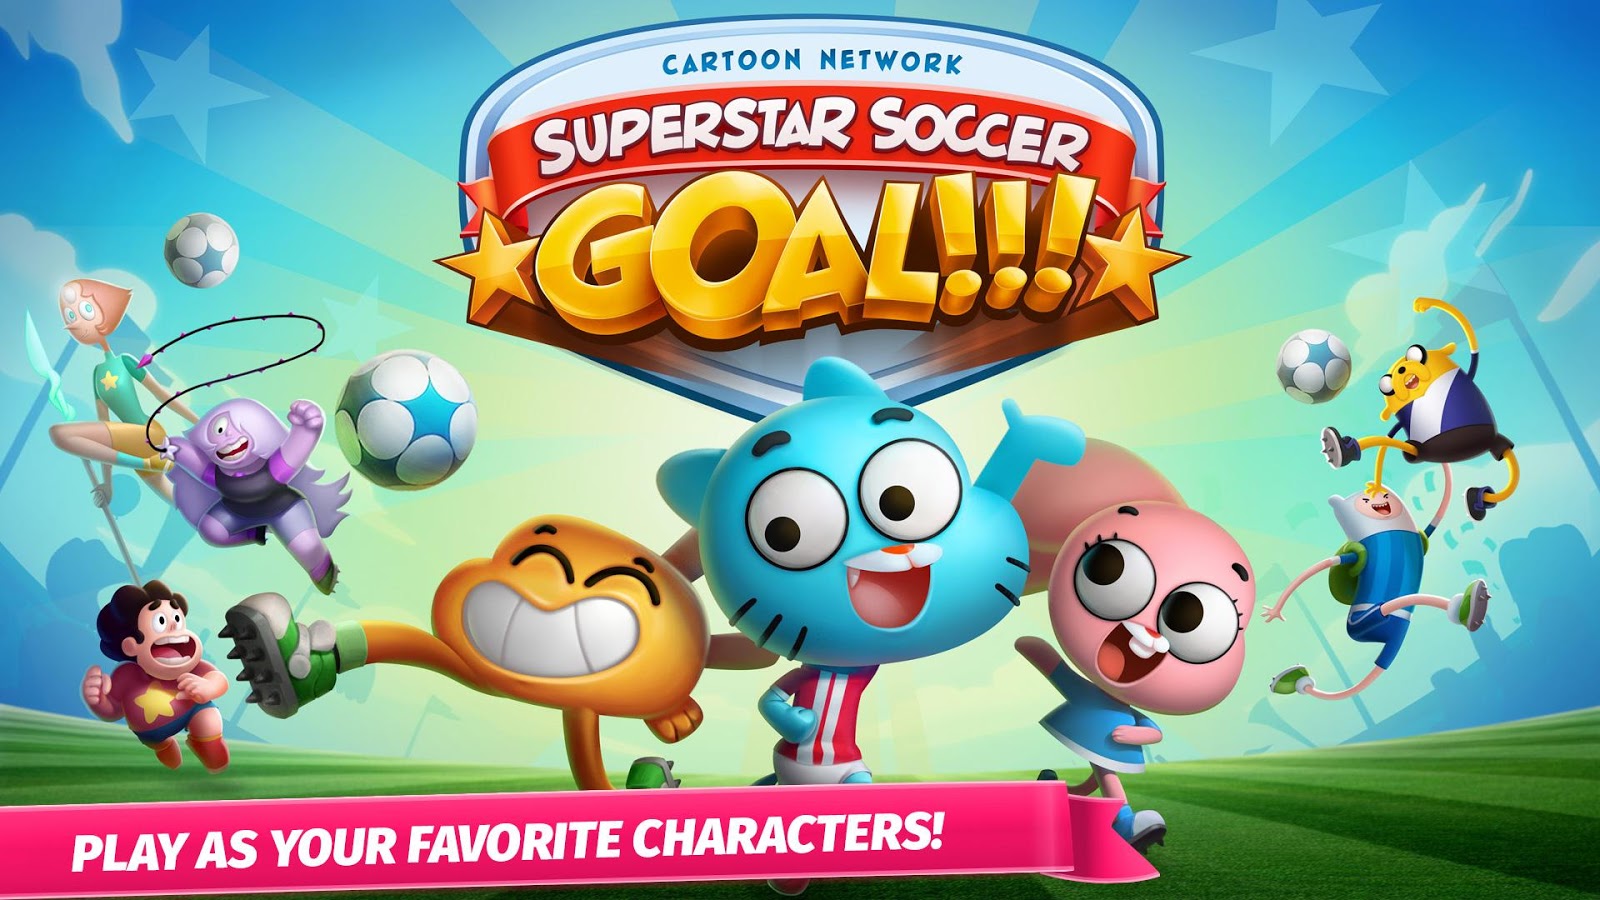 Cartoon Network Superstar Soccer Goal!!!